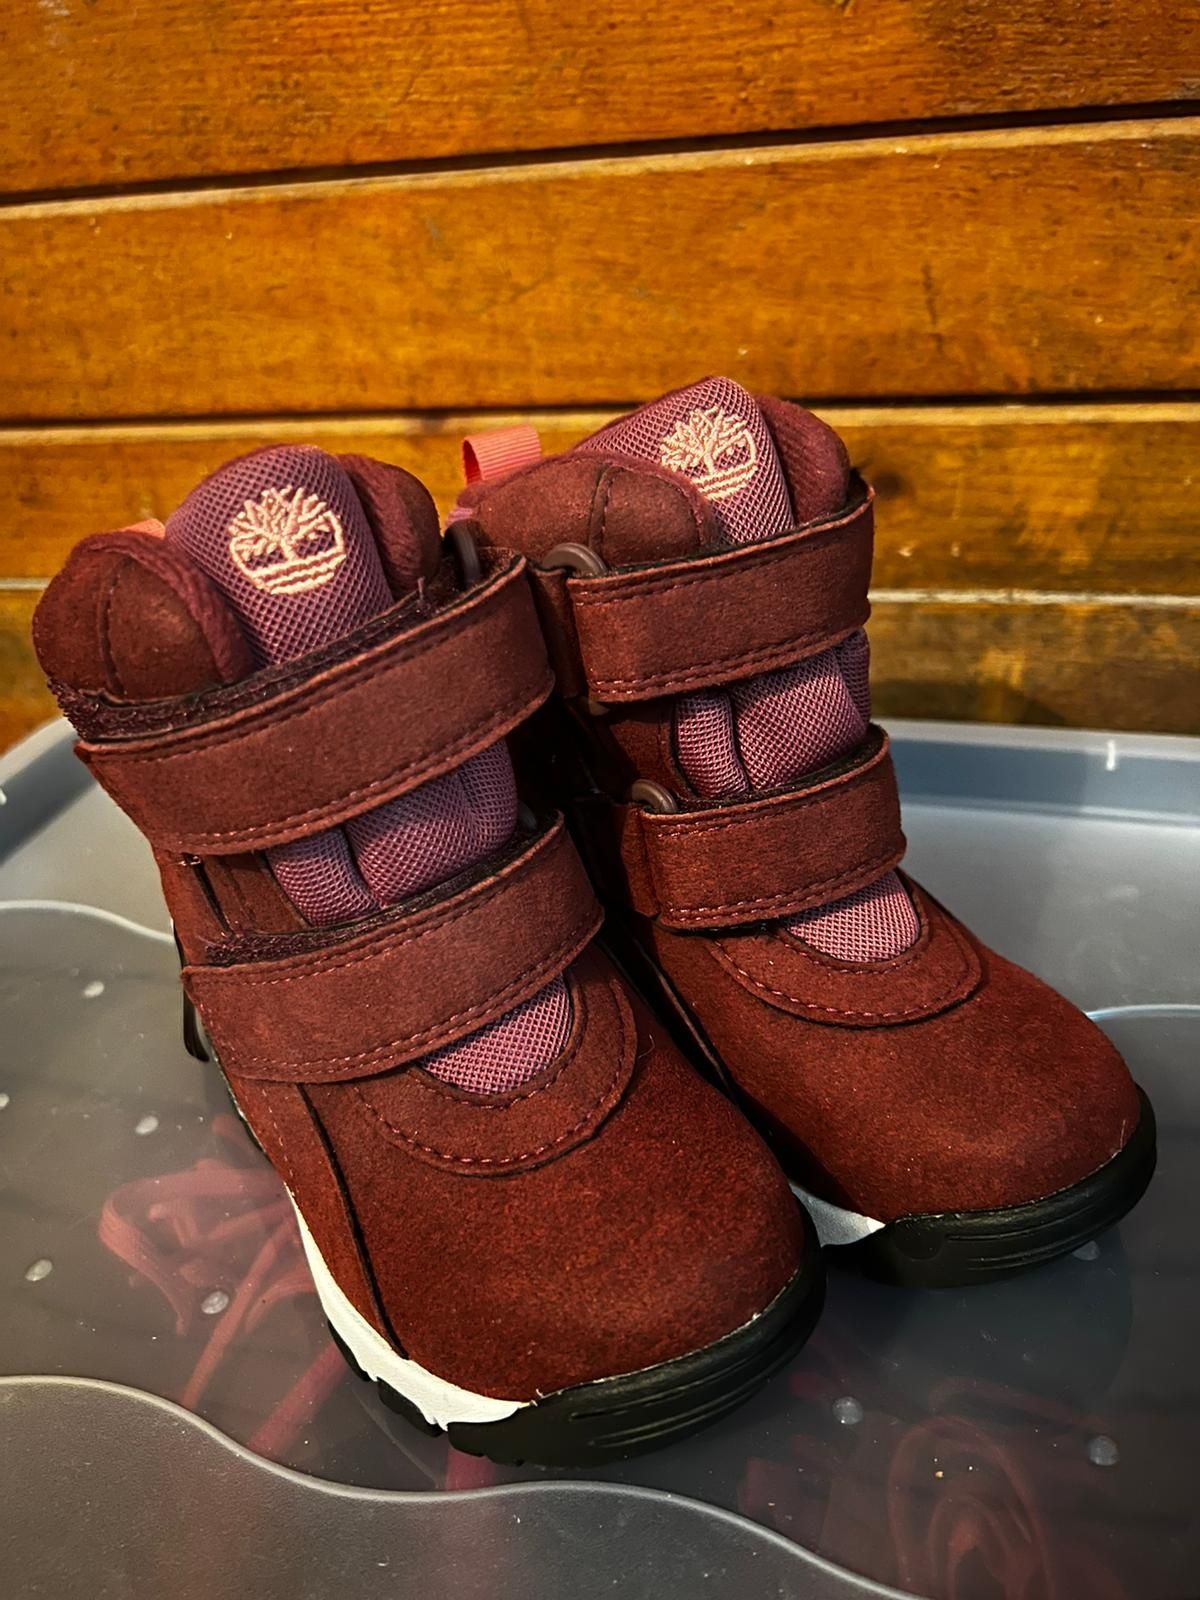 Buty dla dzieci Timberland Chillberg GTX 21 22 i 23 nowe